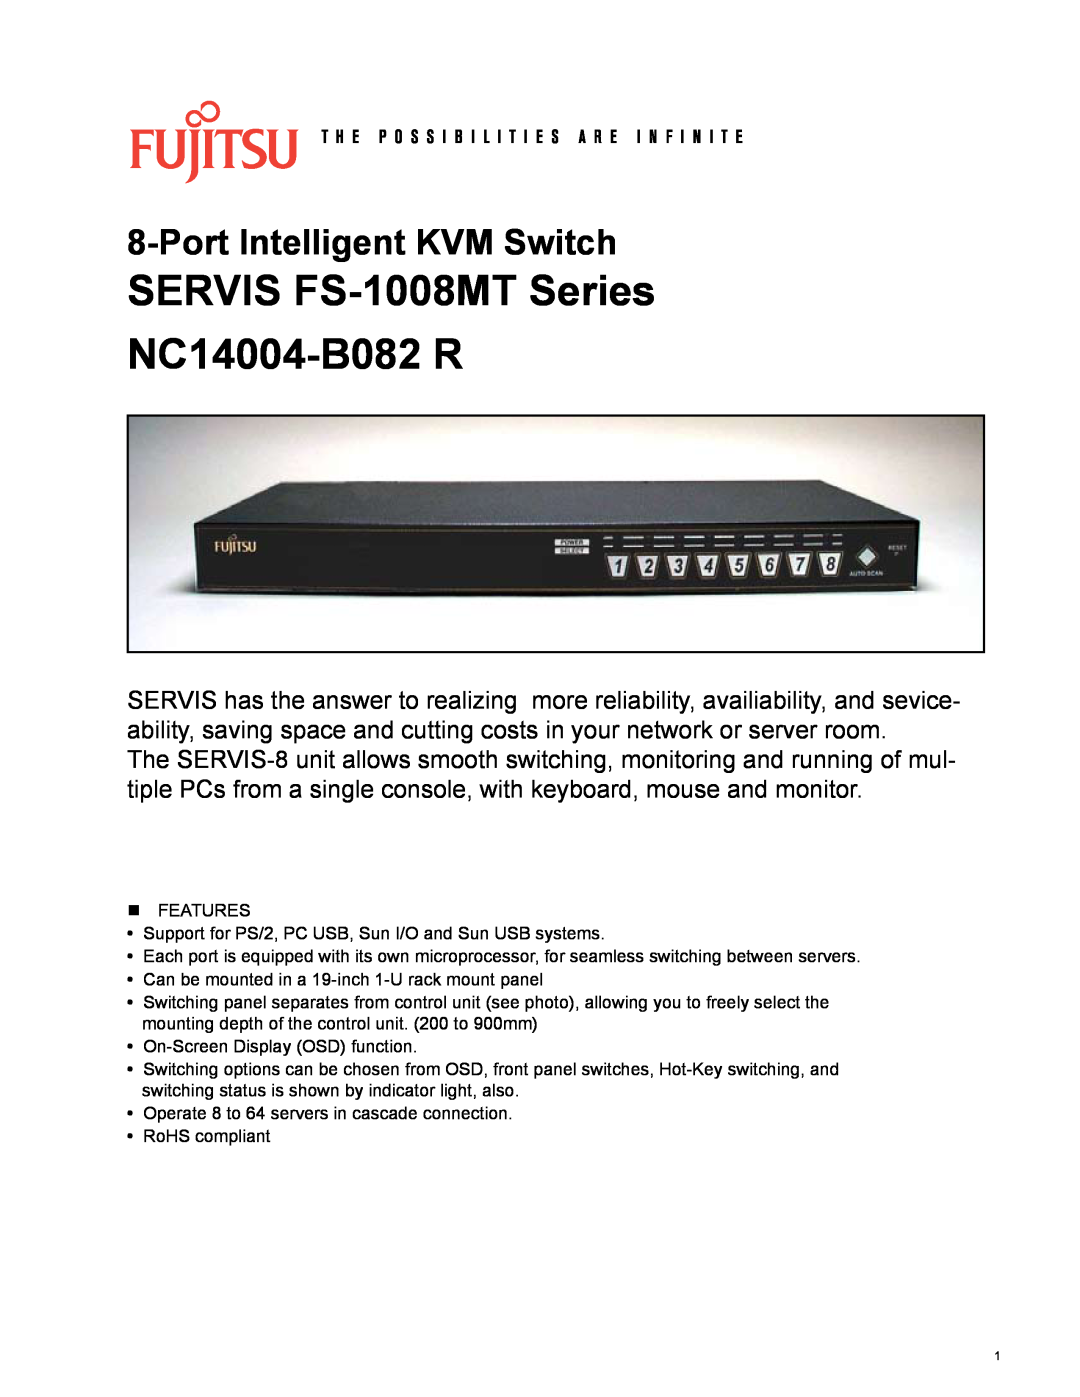 Fujitsu FS-1008MT Series manual SERVIS FS-1008MTSeries NC14004-B082R, PortIntelligent KVM Switch 